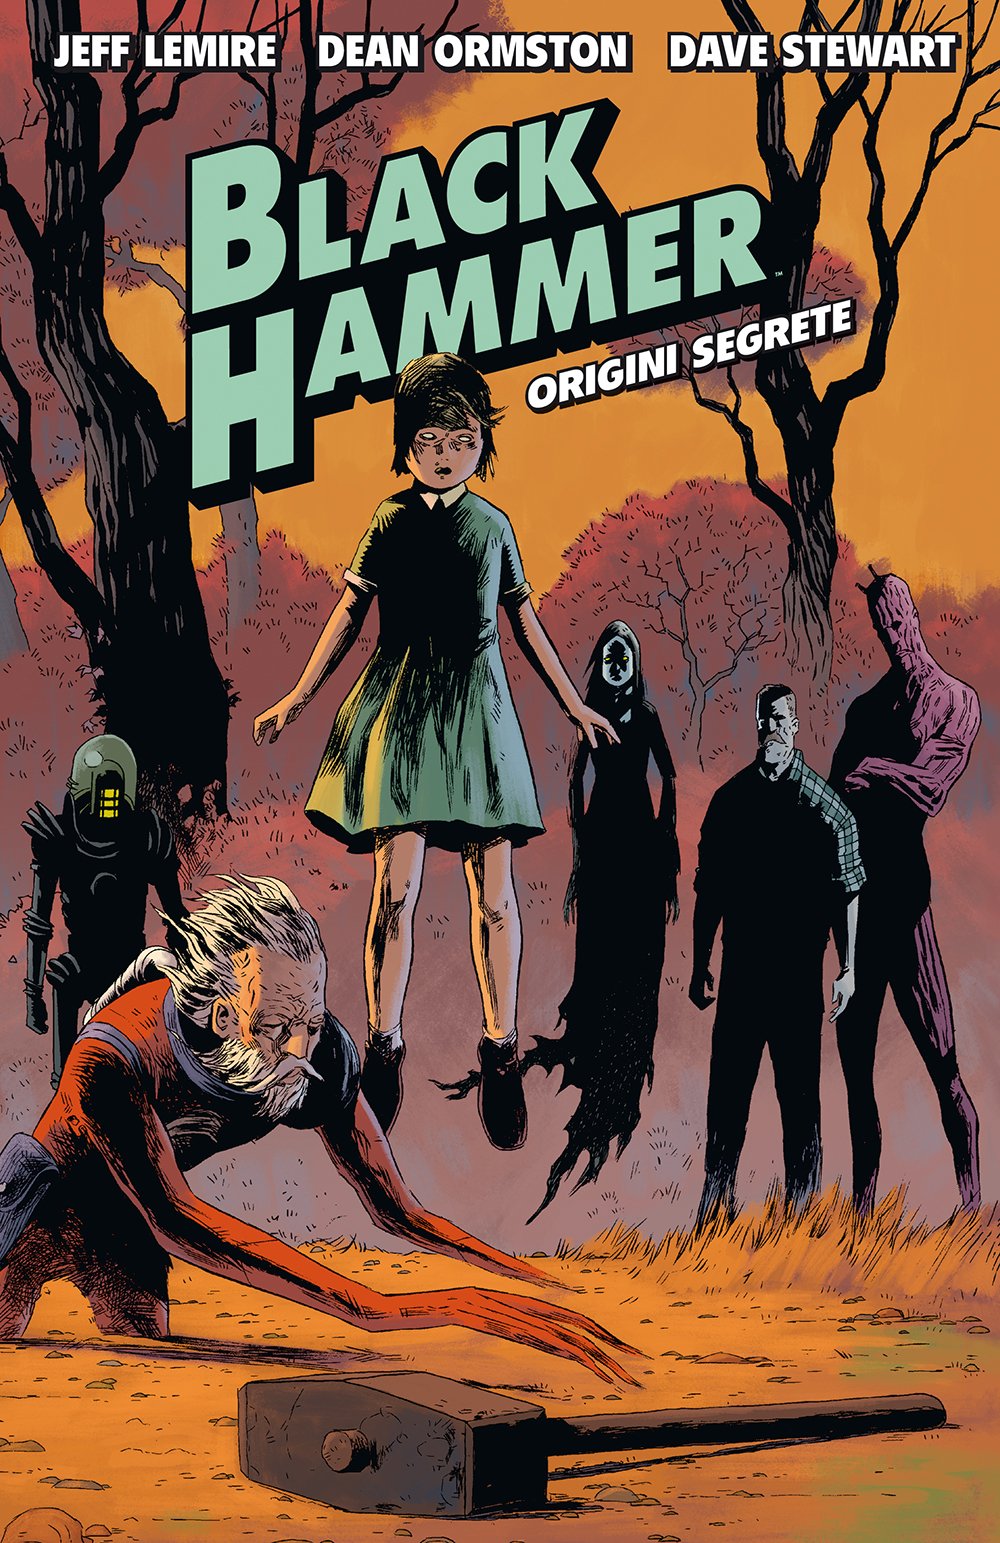 Black Hammer #01 - Origini Segrete